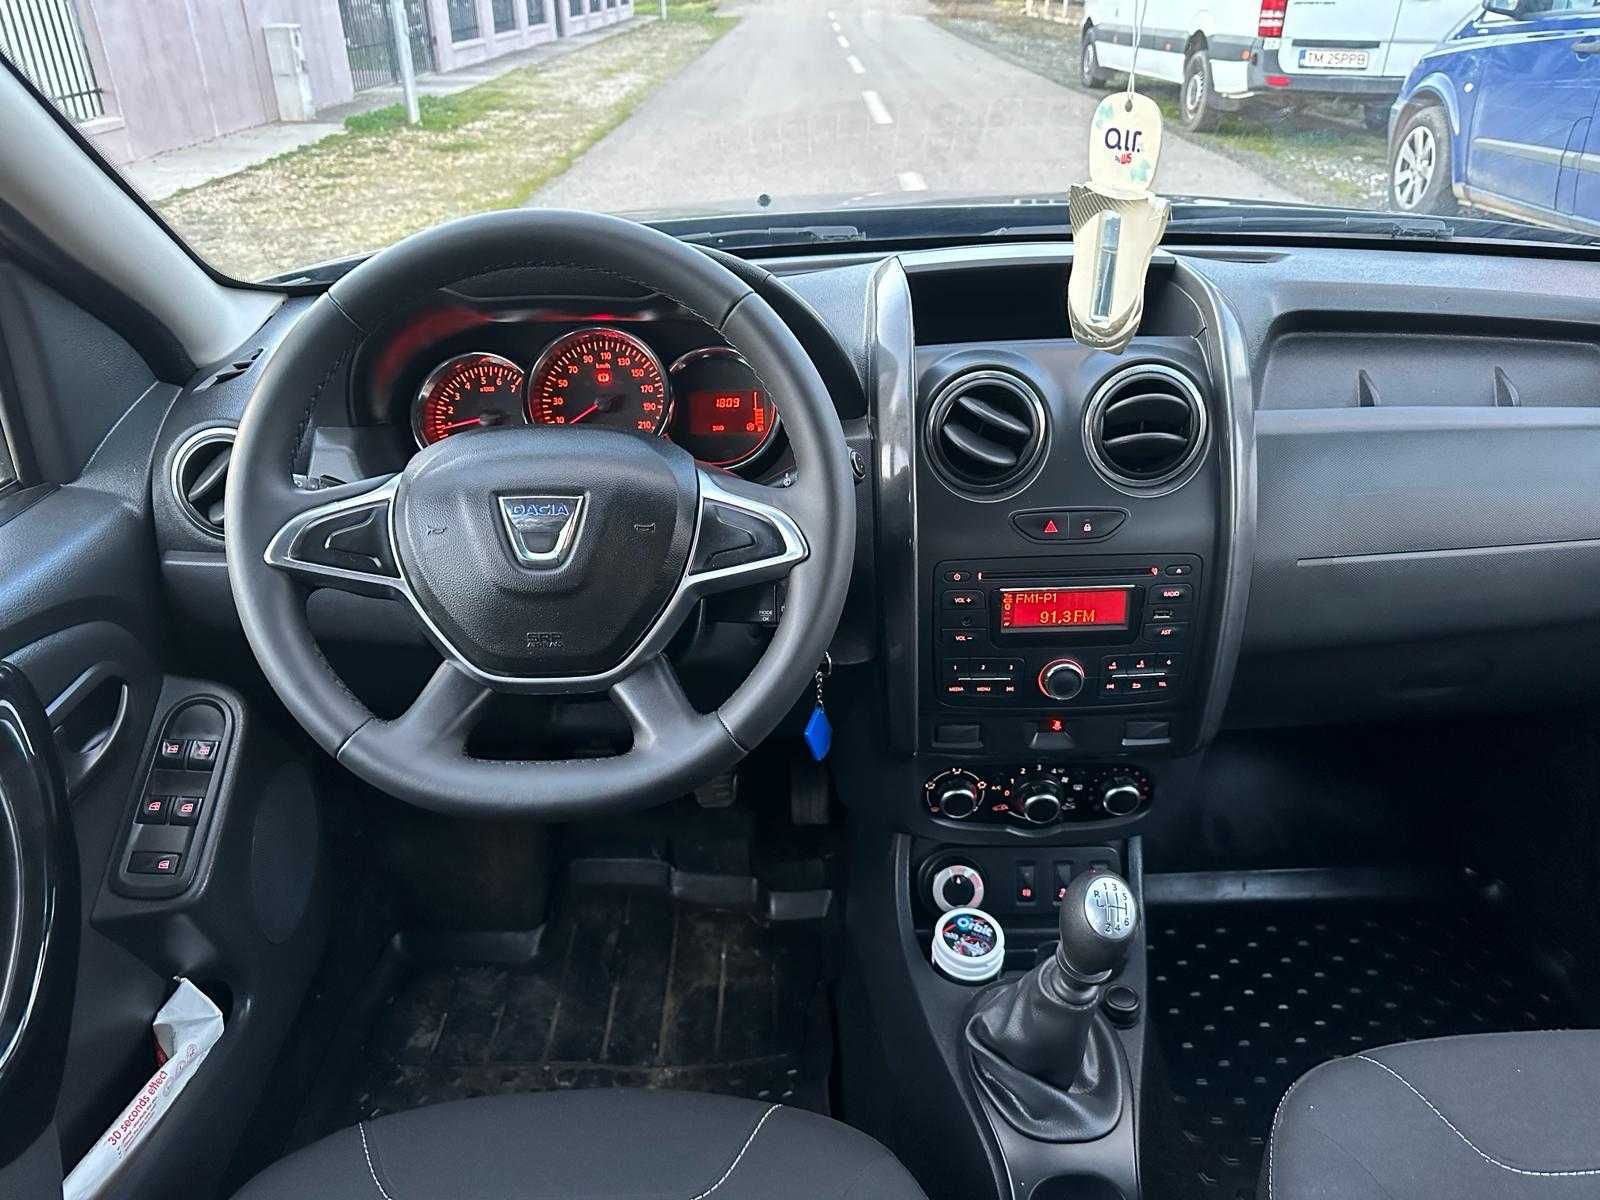 Dacia Duster 1.5 DCI 110cp euro 6  4x4 an 2017